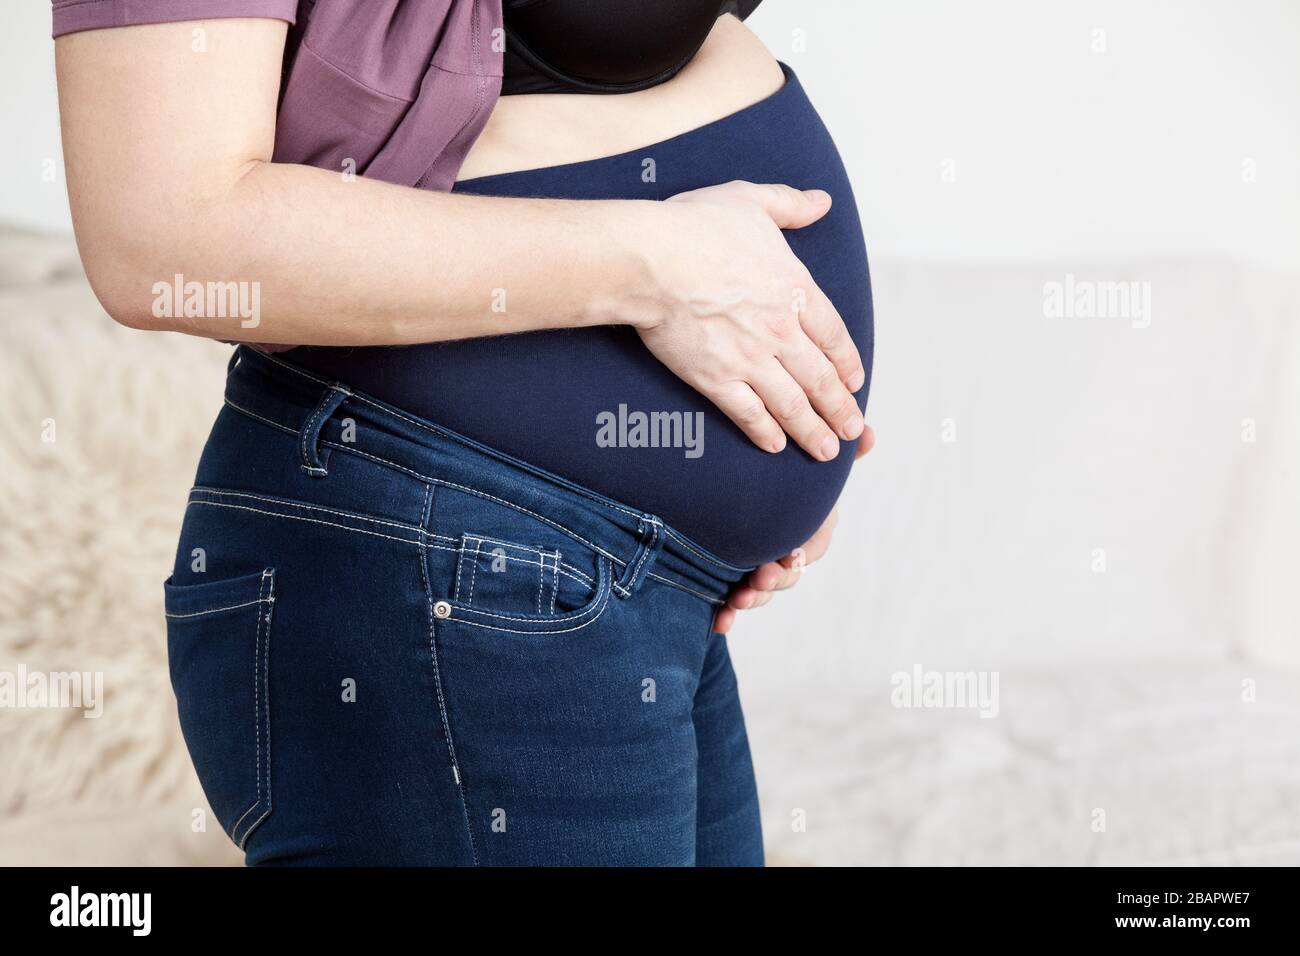 Pantalones Para Mujeres Embarazadas Banda Elastica Especial Para Abdomen Mujer En Dormitorio Vista Lateral Fotografia De Stock Alamy